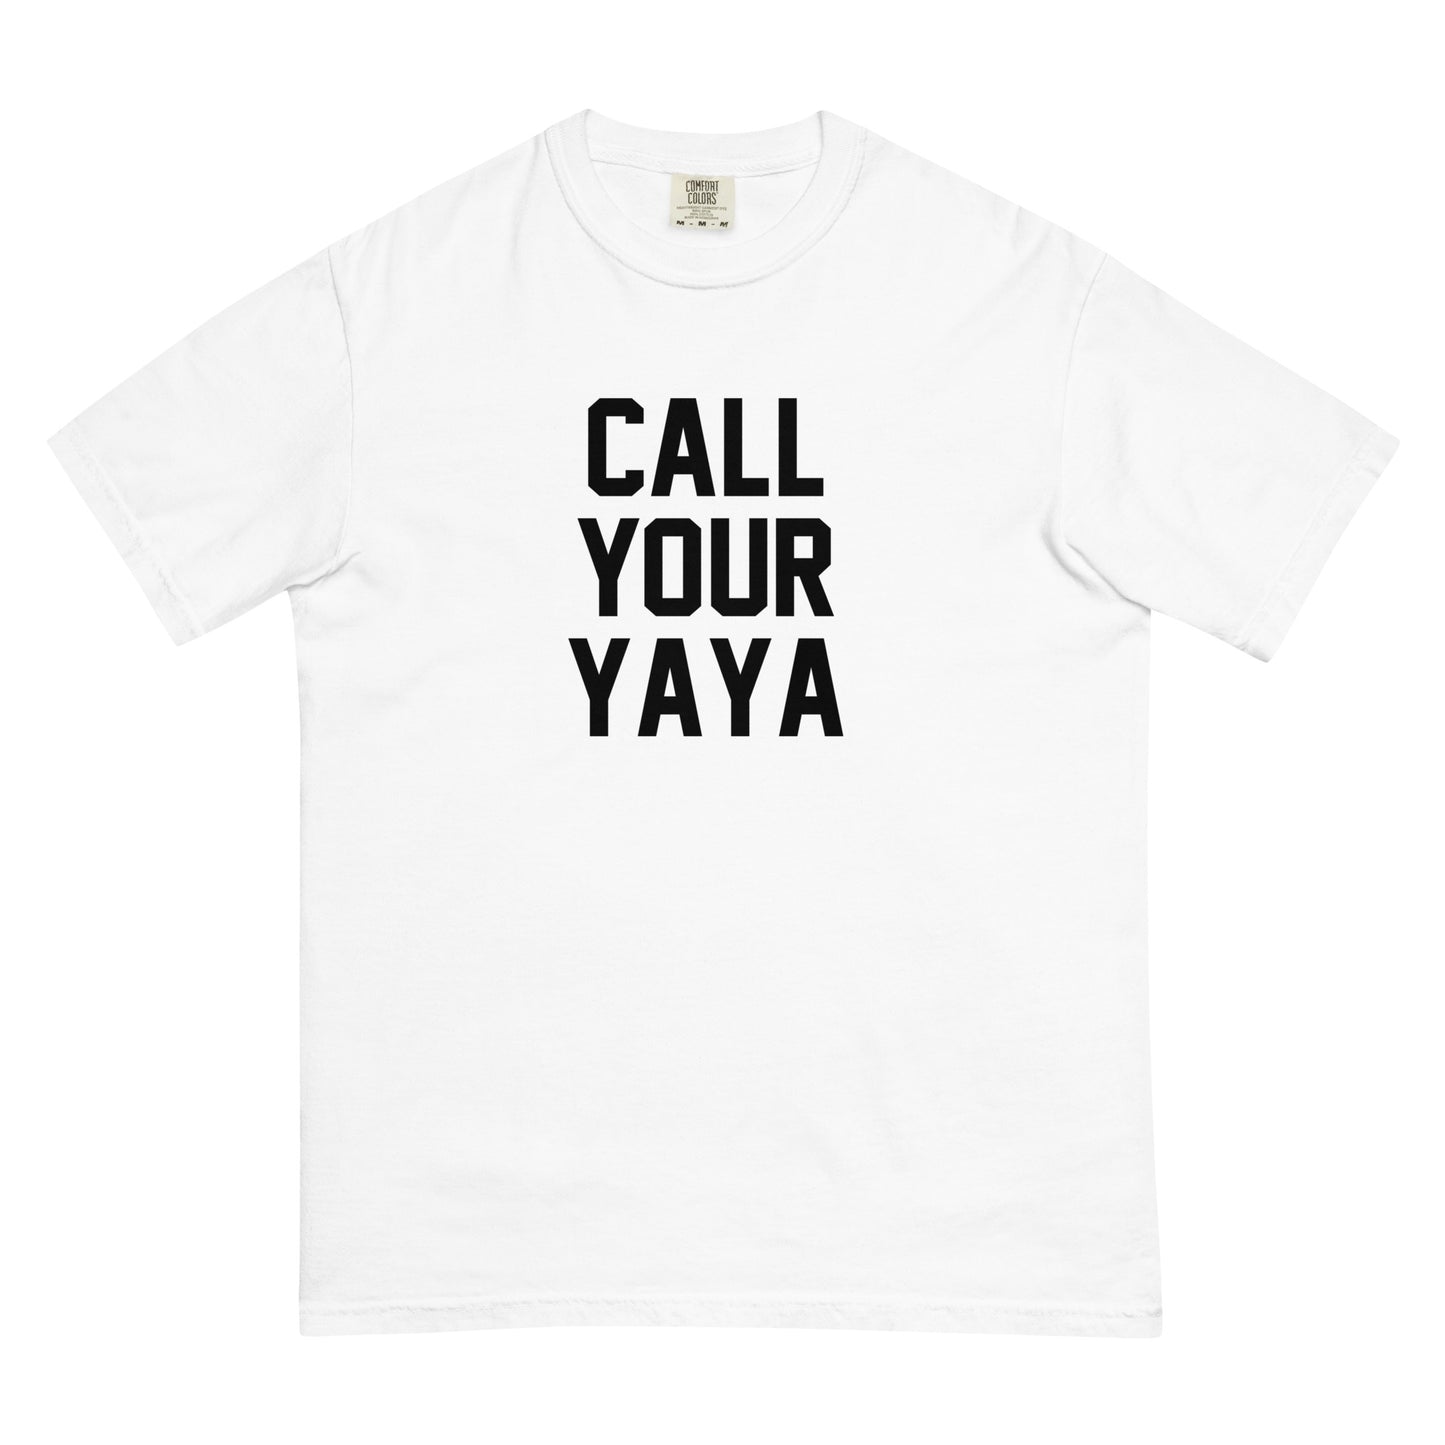 CALL YOUR YAYA